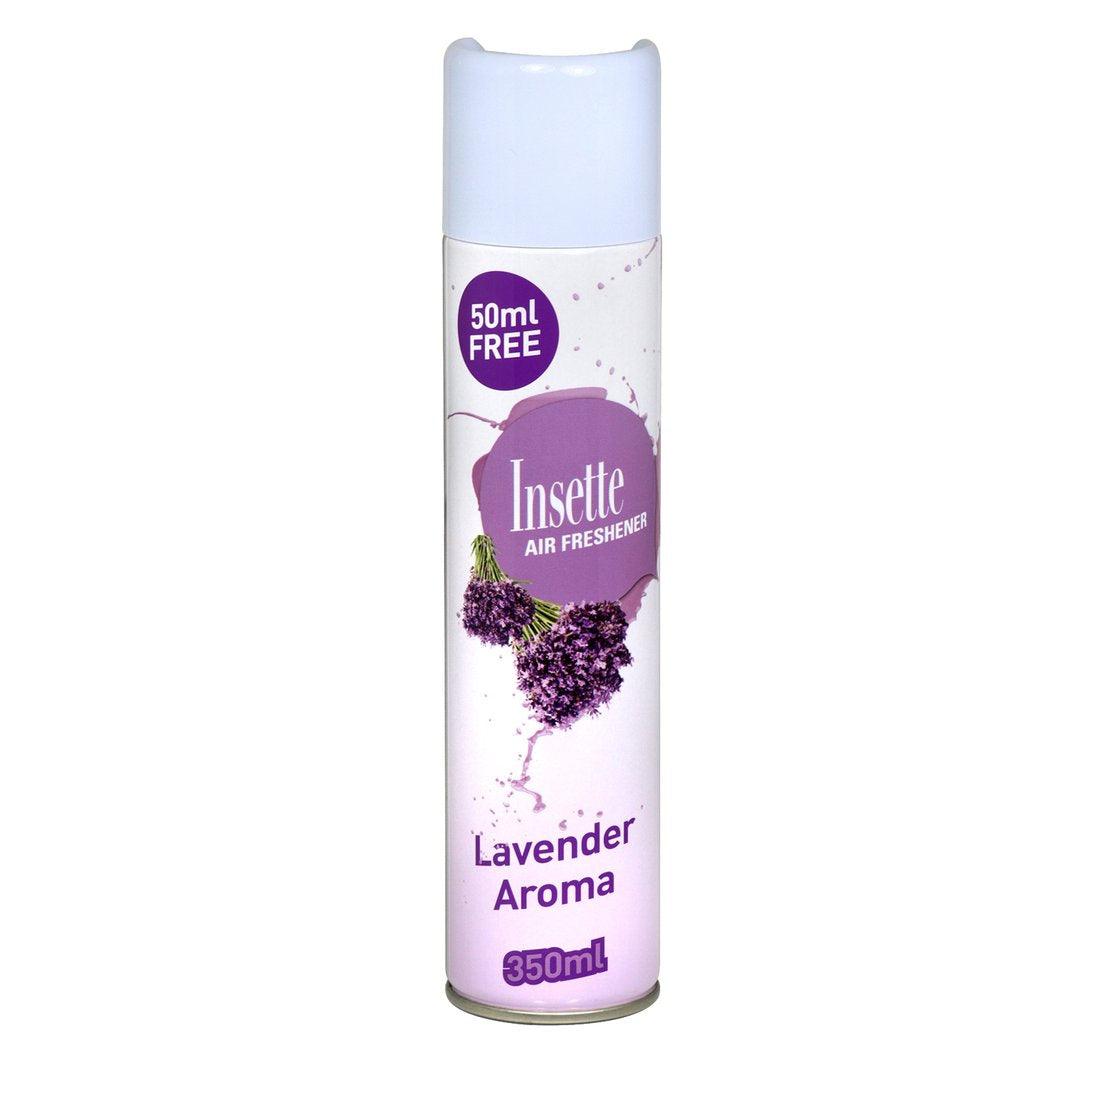 Insette Air Freshener Lavender Aroma 350ml - Vending Superstore